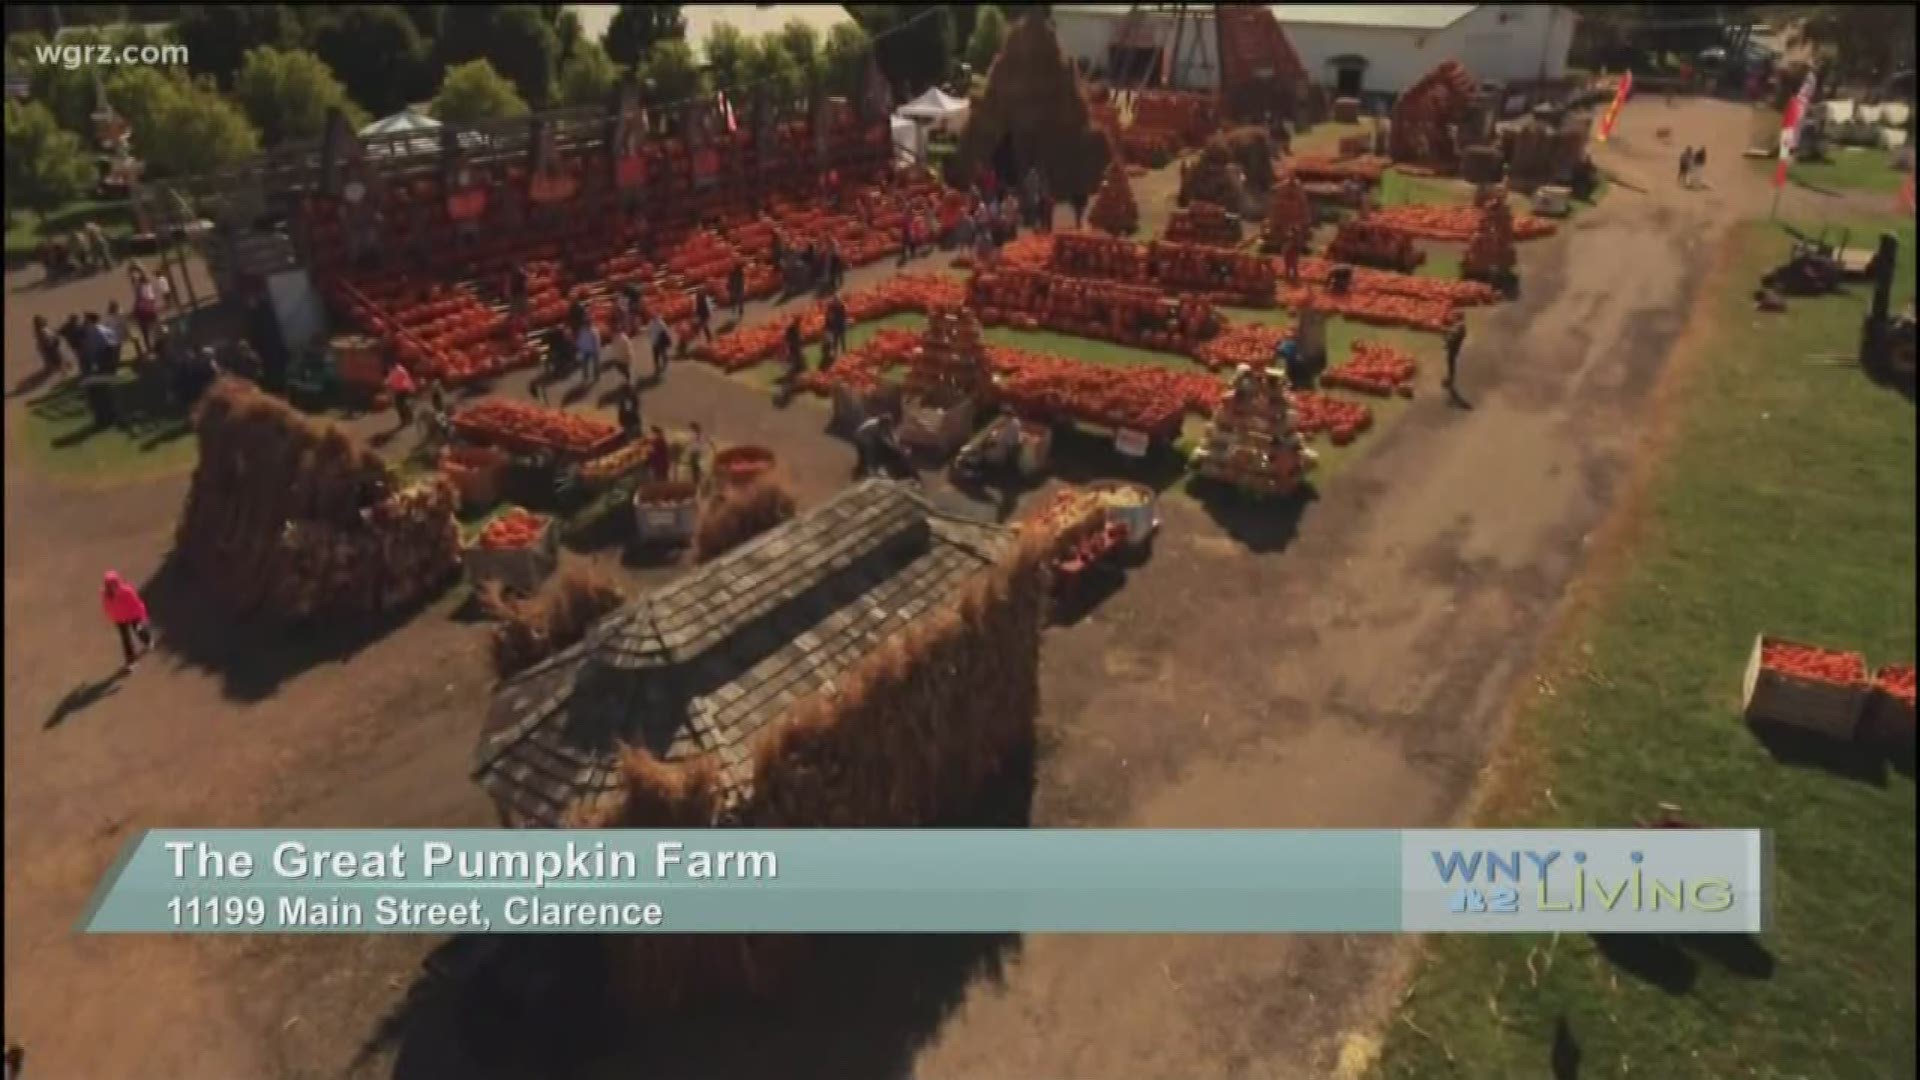 September 14 - The Great Pumpkin Farm